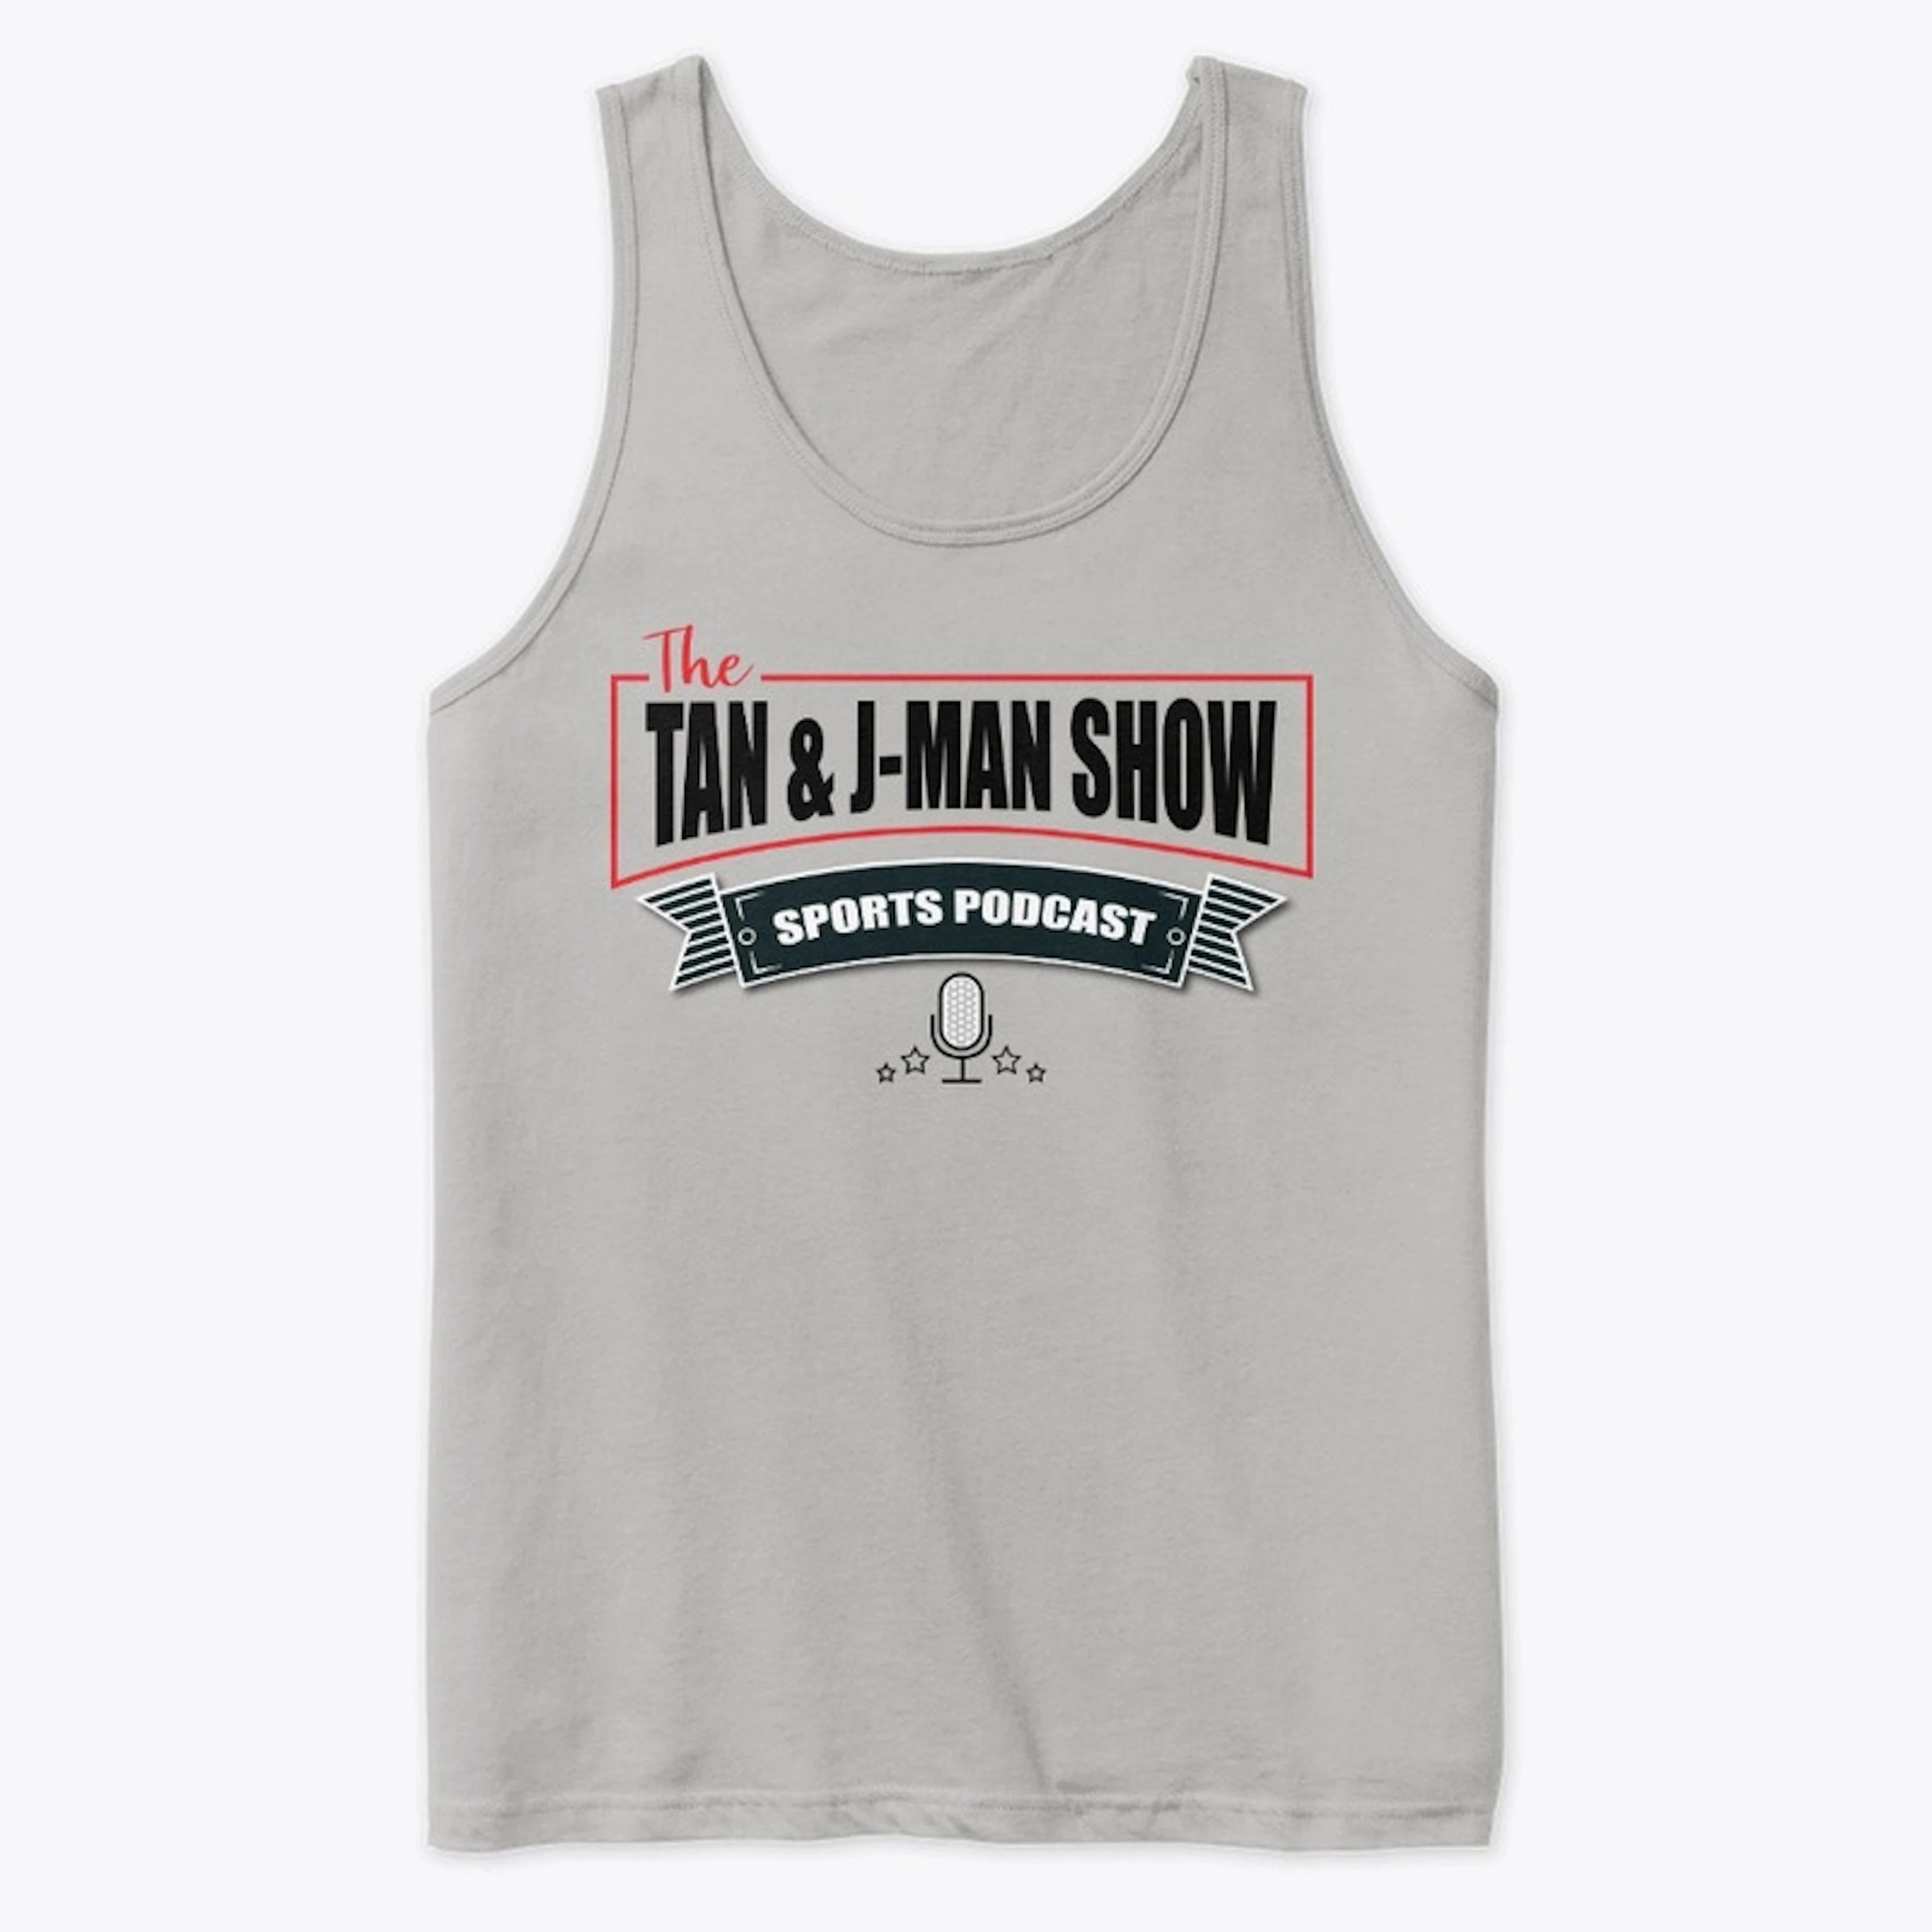 Tan and J-Man Show Tank Top